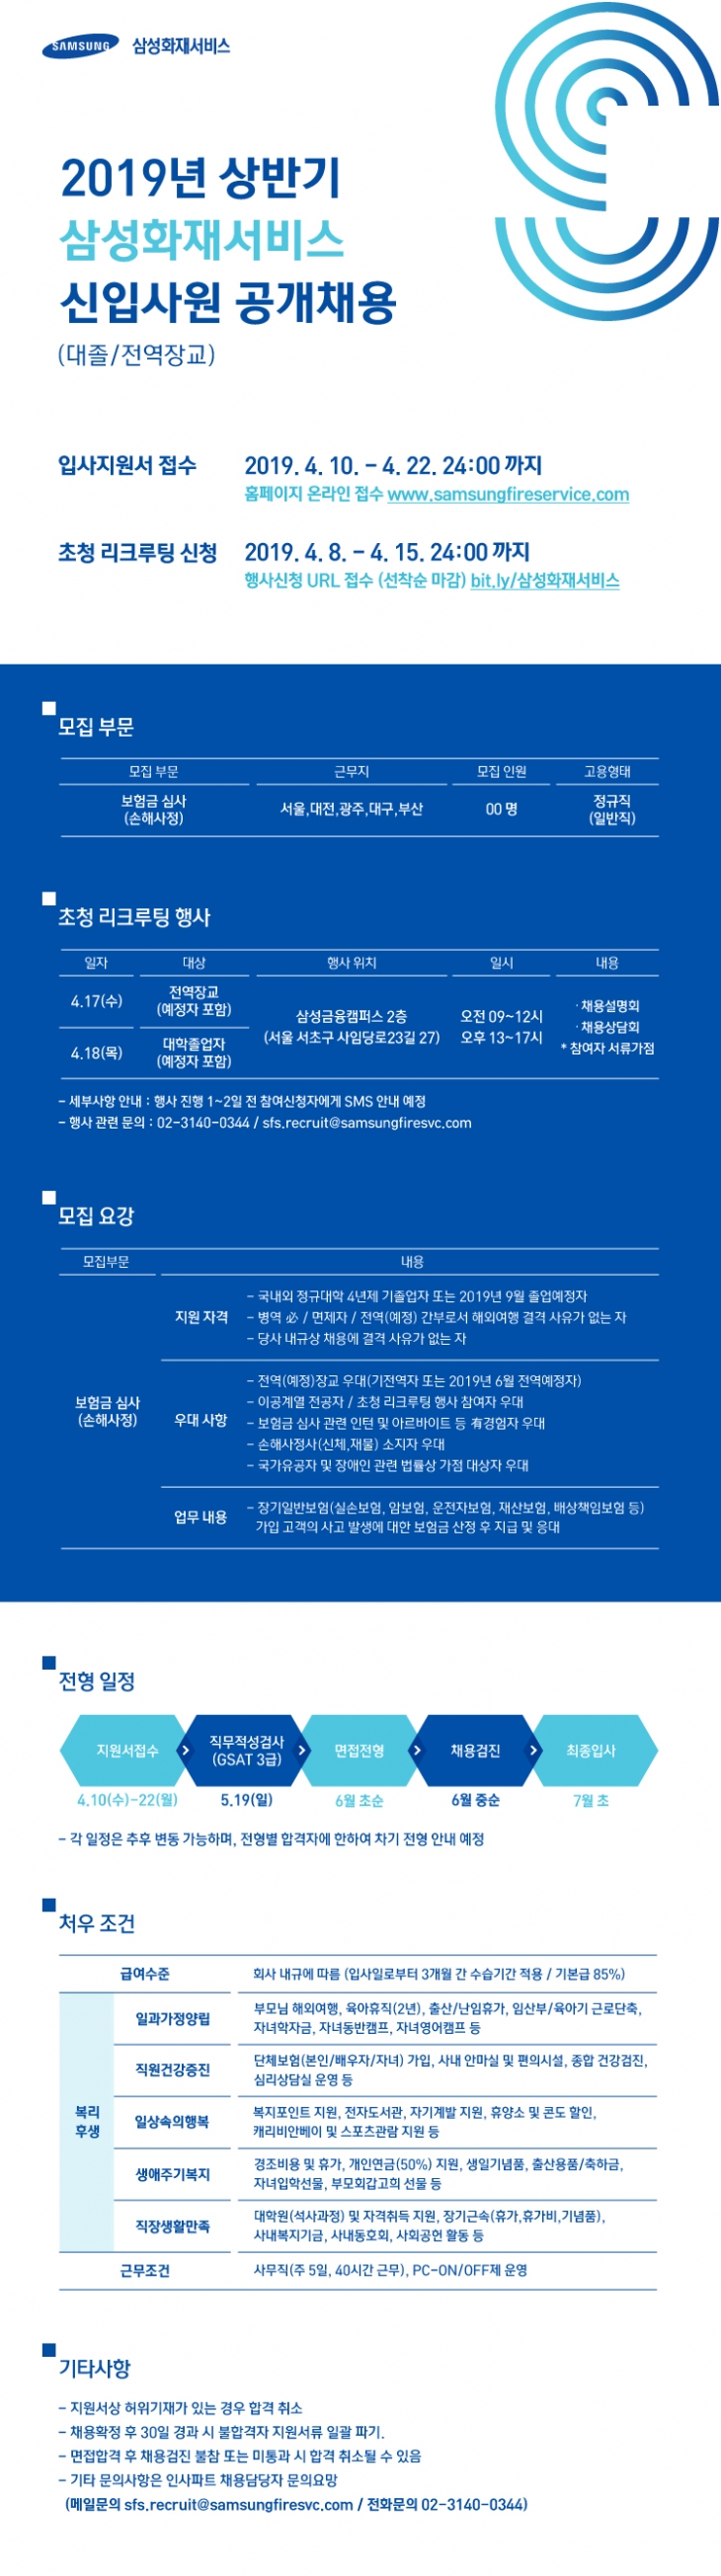 2019 삼성화재서비스 신입사원 공개채용 안내 ~4/22